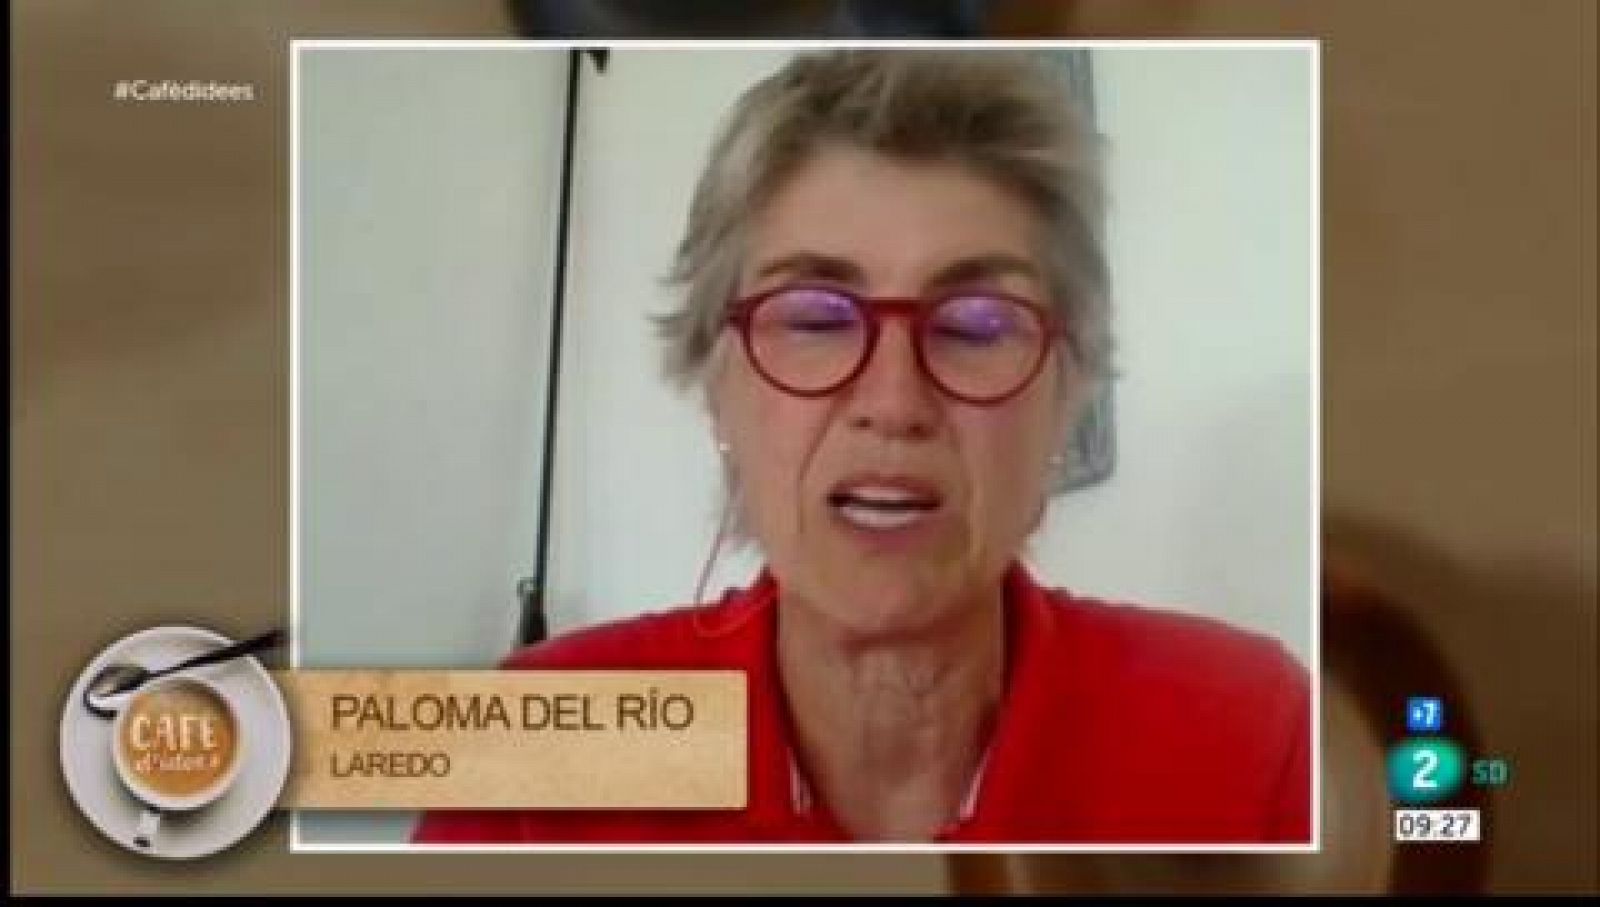 Paloma del Río s'acomiada dels Jocs Olímpics 